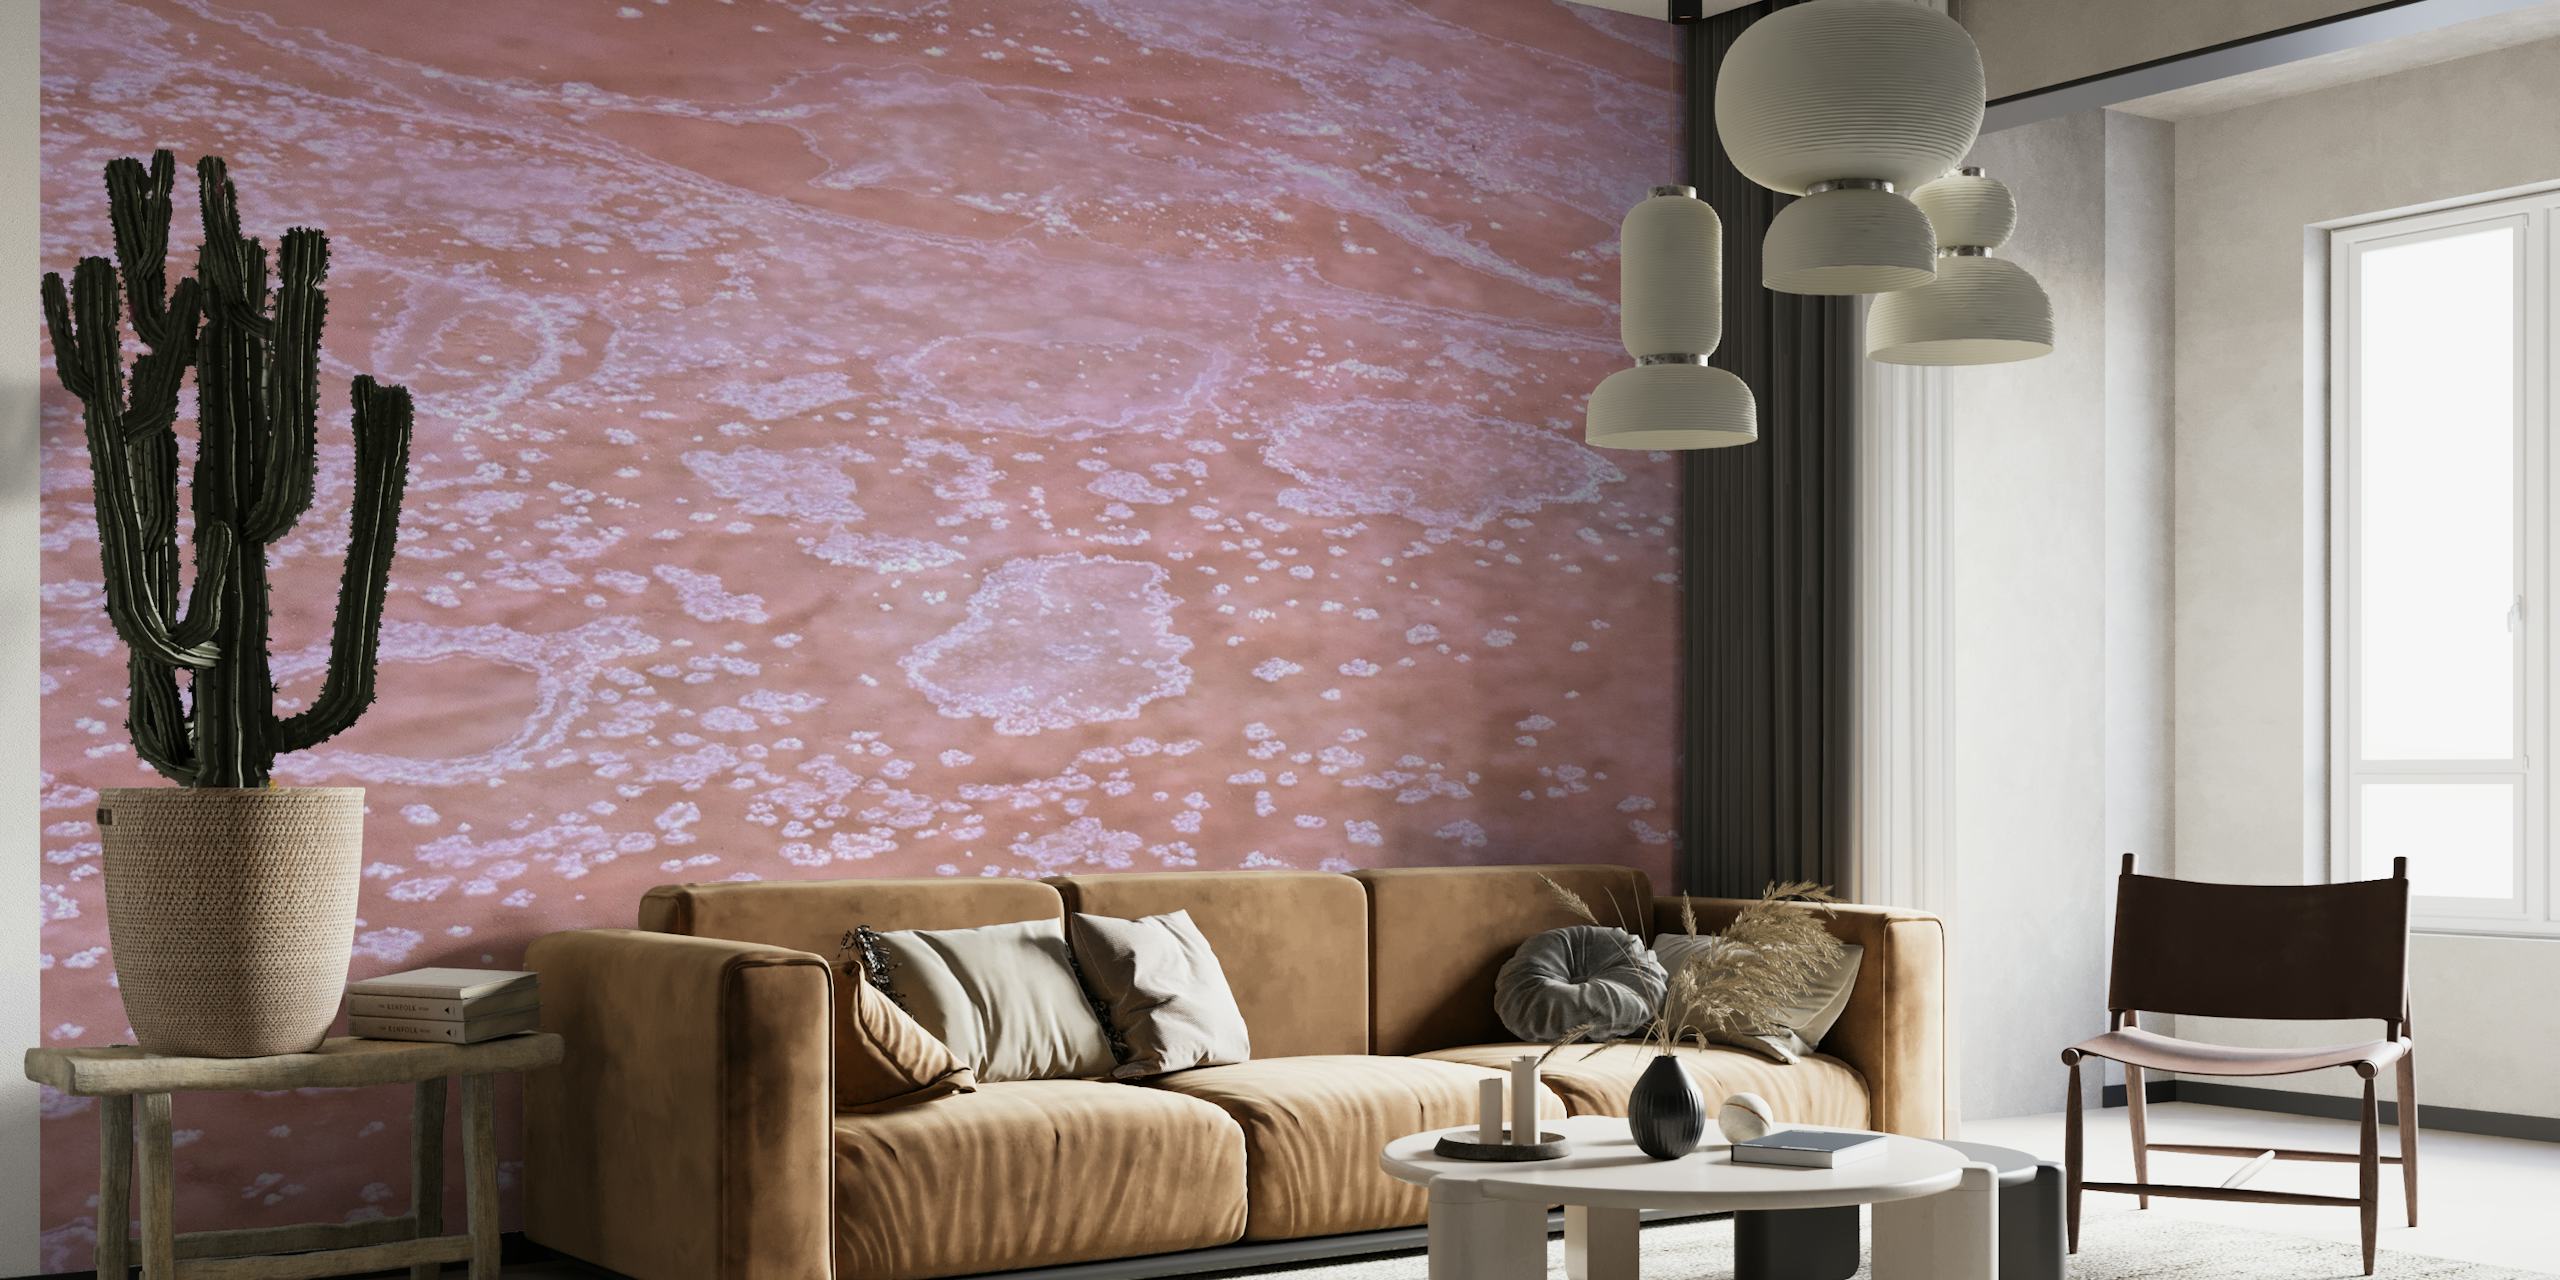 Mural de parede com padrões de sal cristalizado em tons quentes de rosa